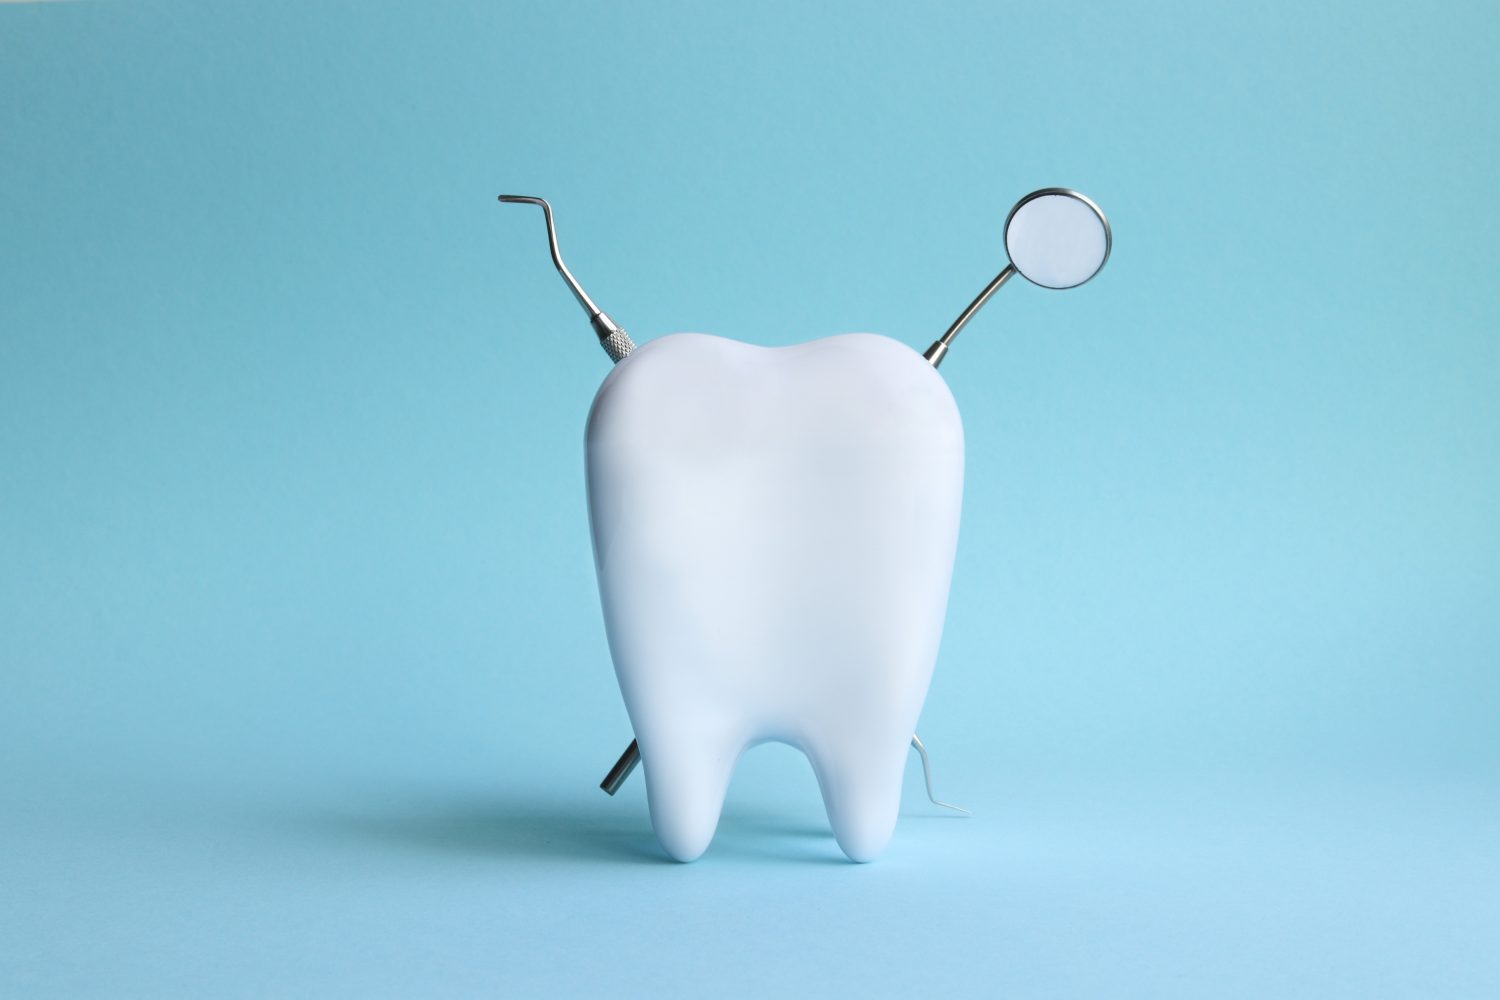 bialy-prosty-zab-po-leczeniu-ortodontycznym